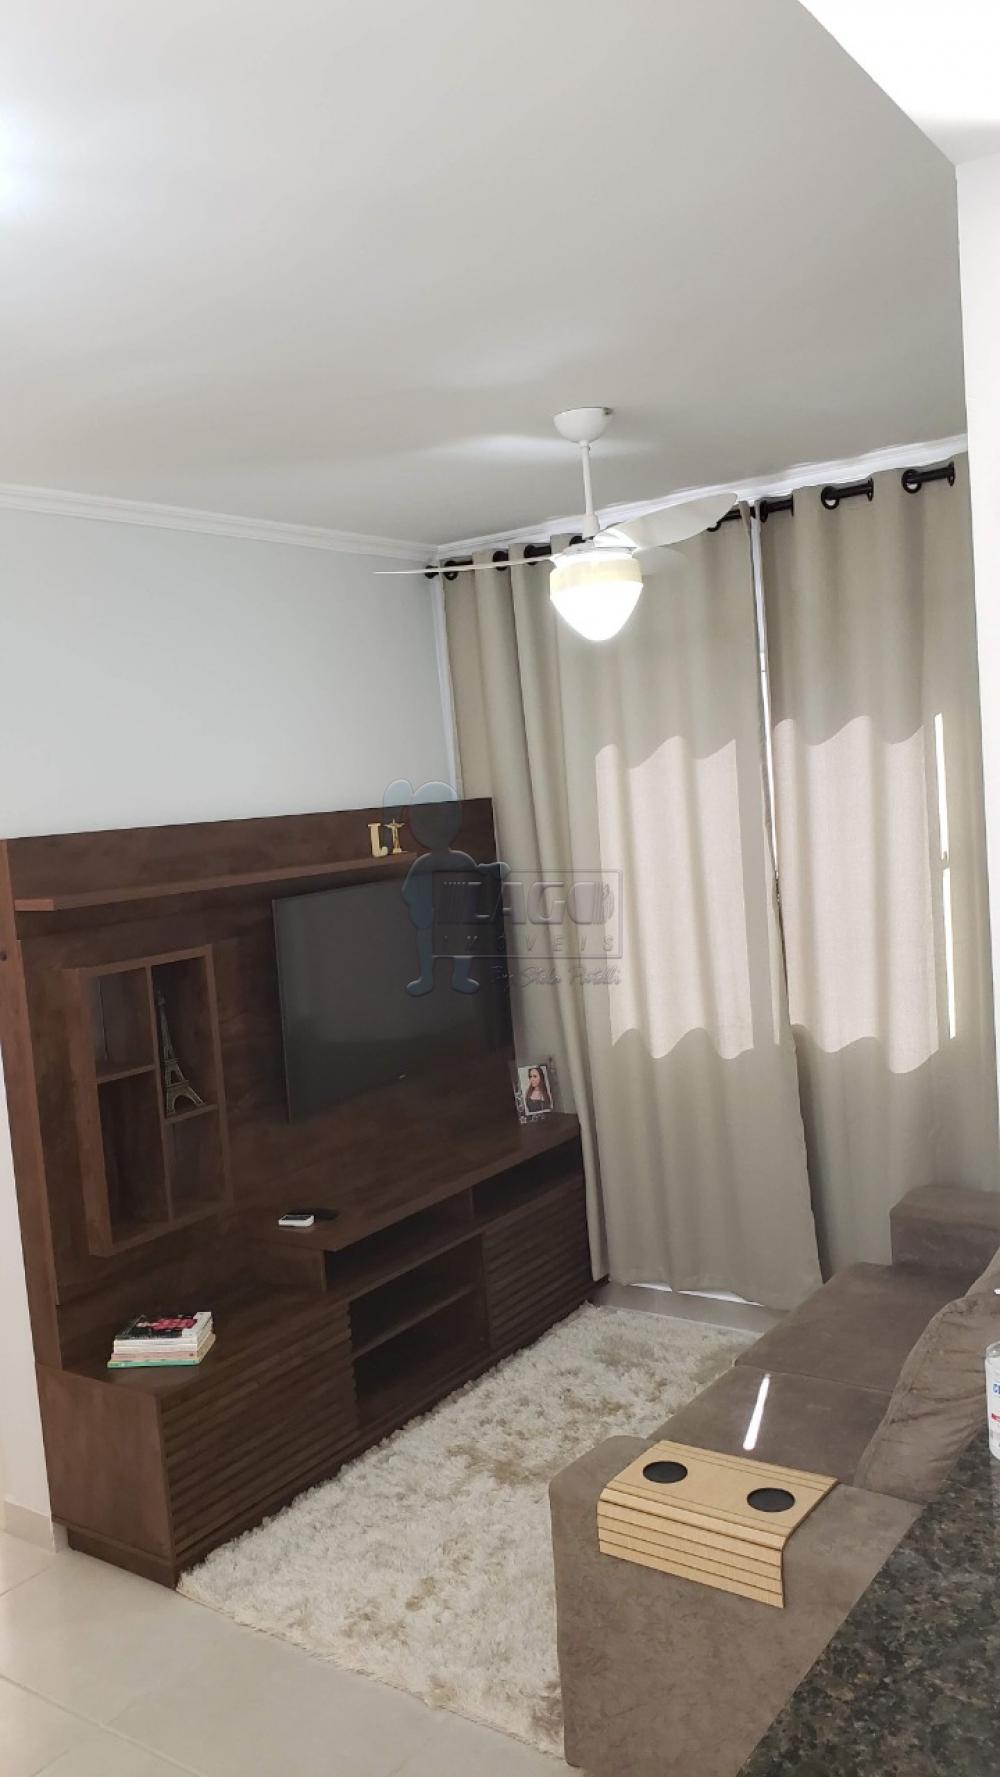 Comprar Apartamentos / Padrão em Ribeirão Preto R$ 250.000,00 - Foto 1